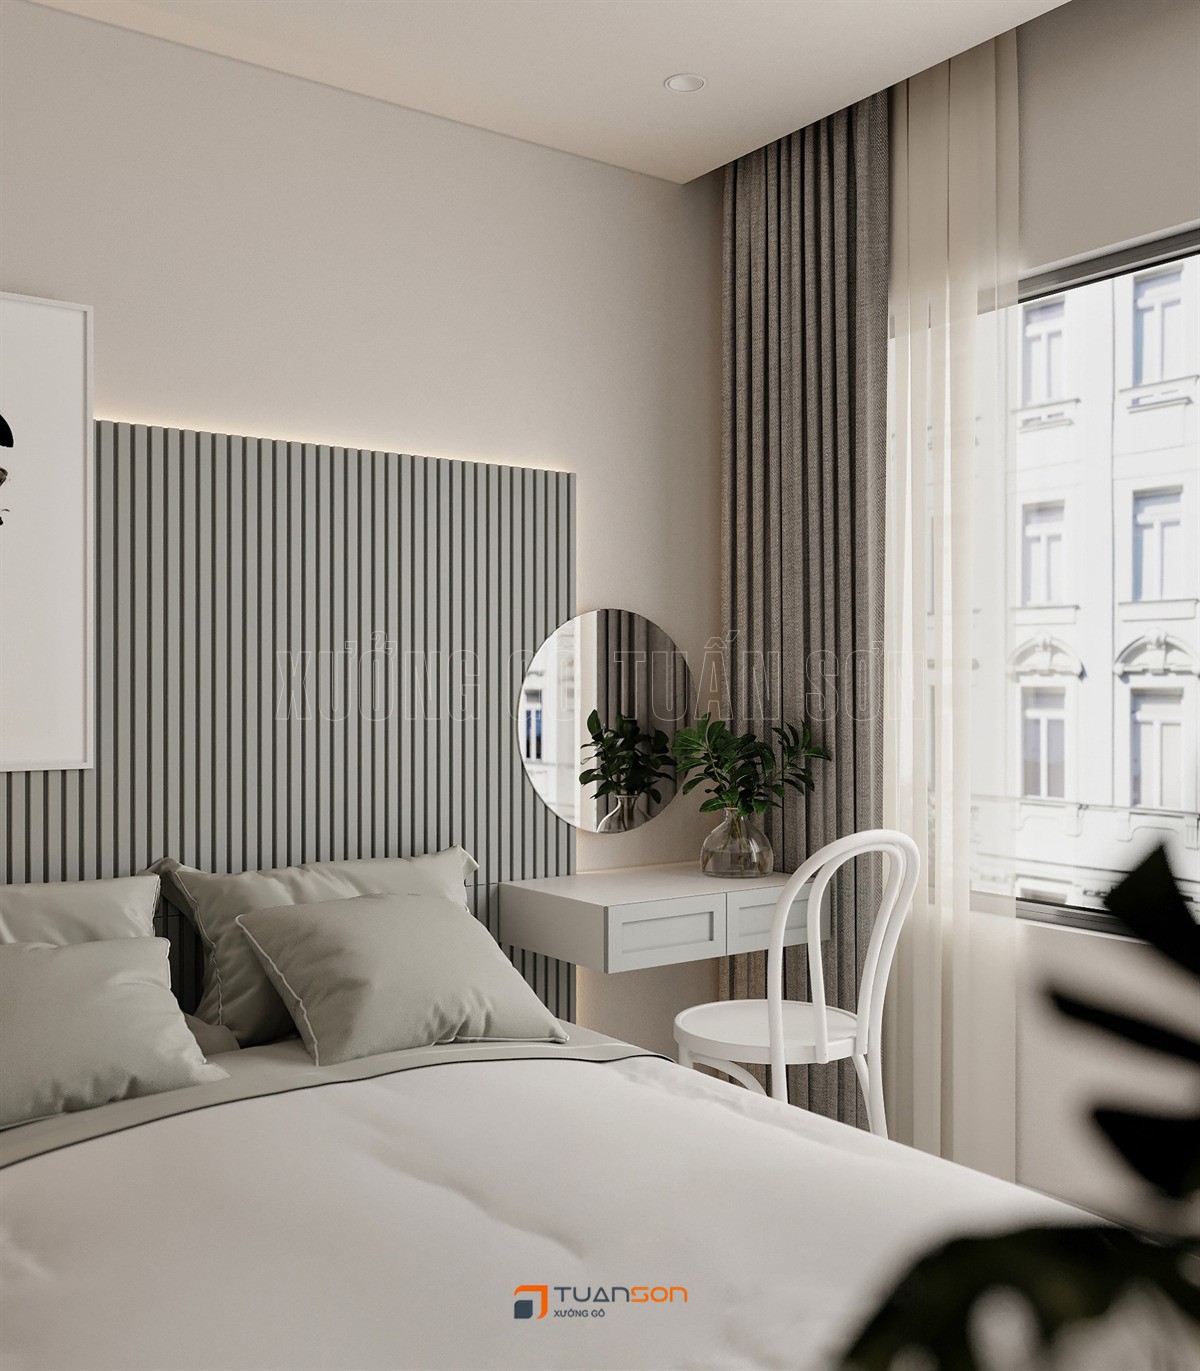 Thiết kế phòng ngủ phong cách Scandinavian (Bắc Âu) tinh tế